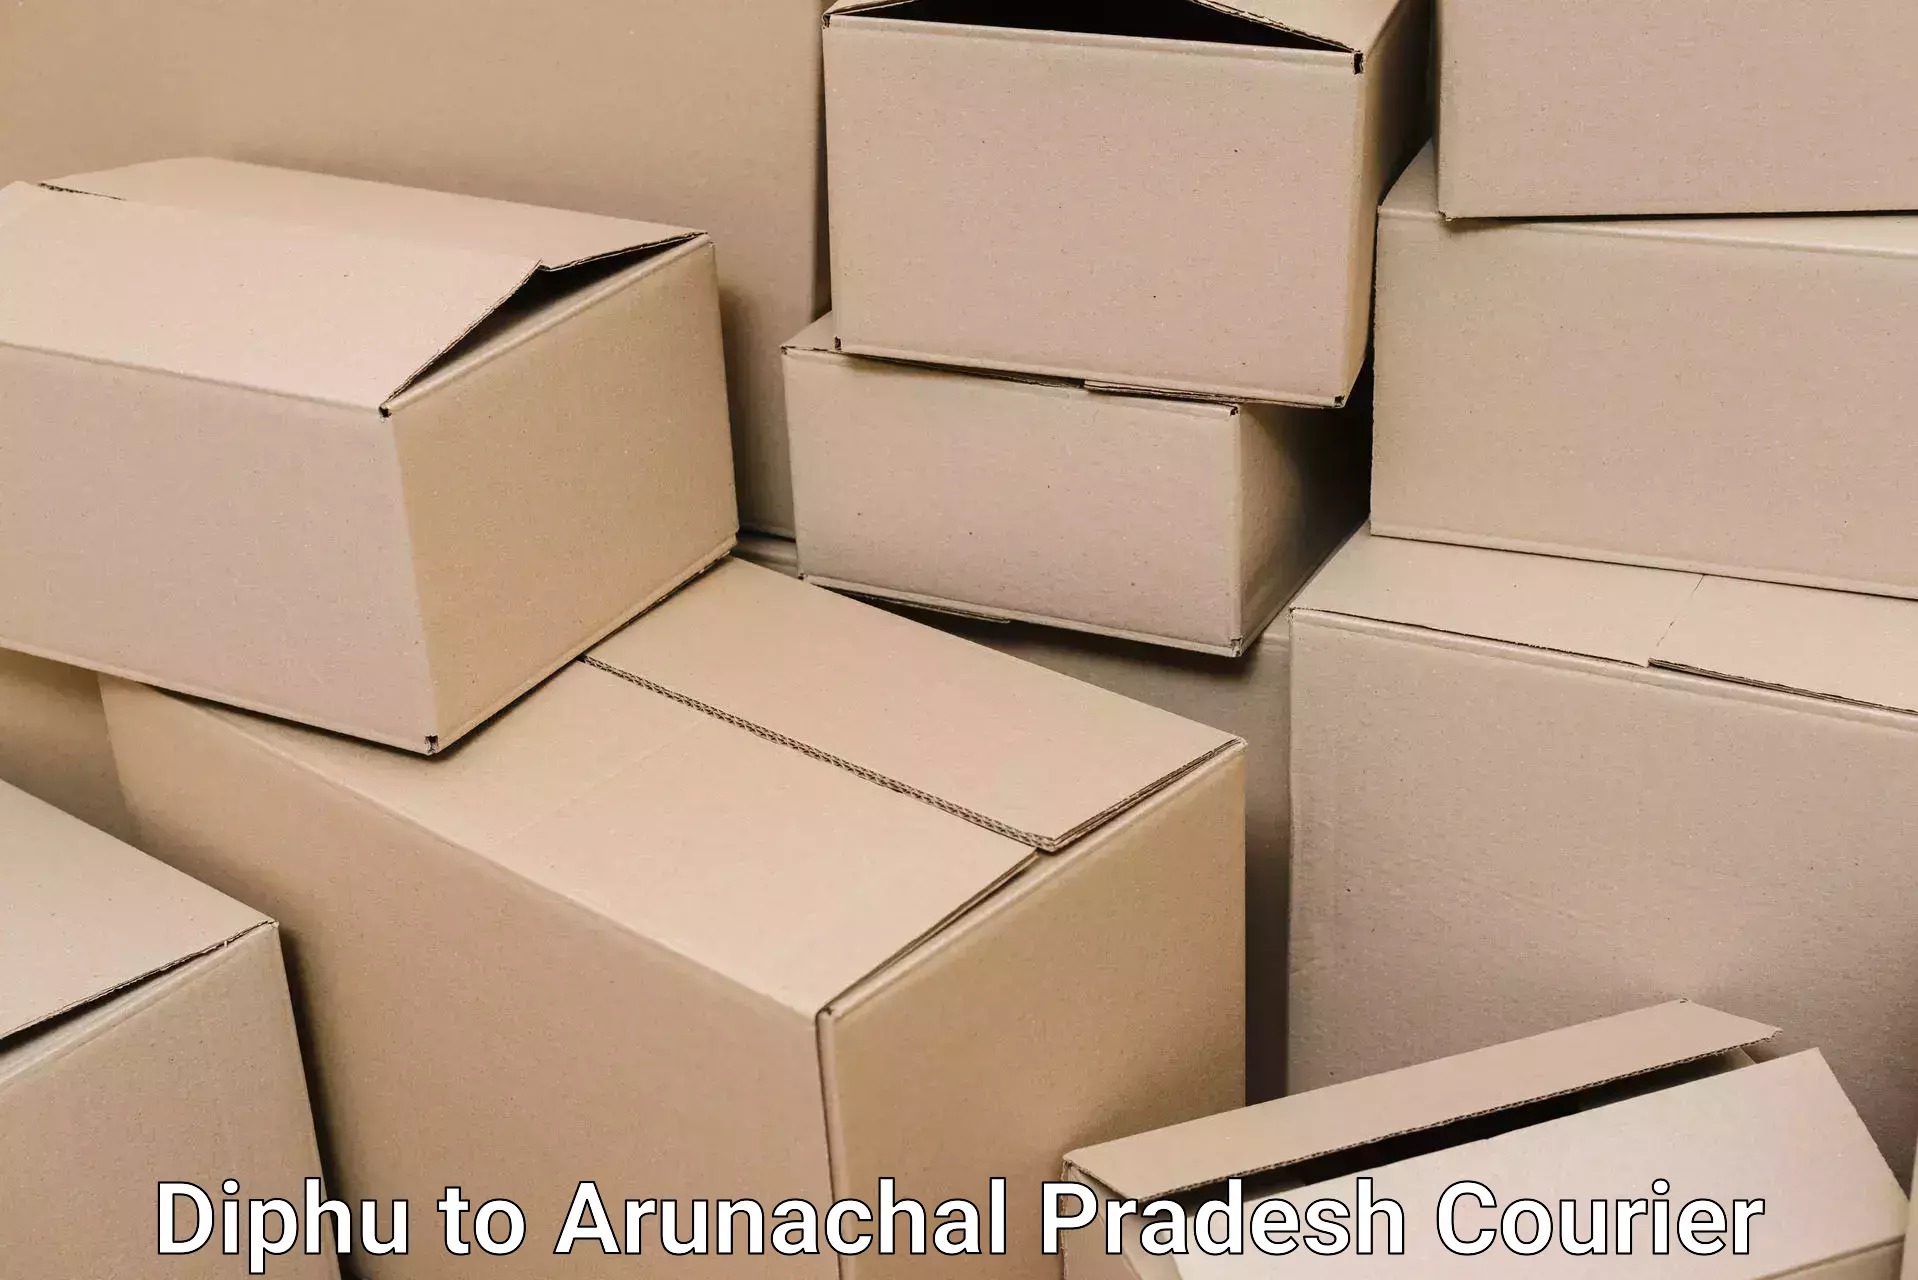 Furniture moving service Diphu to Arunachal Pradesh